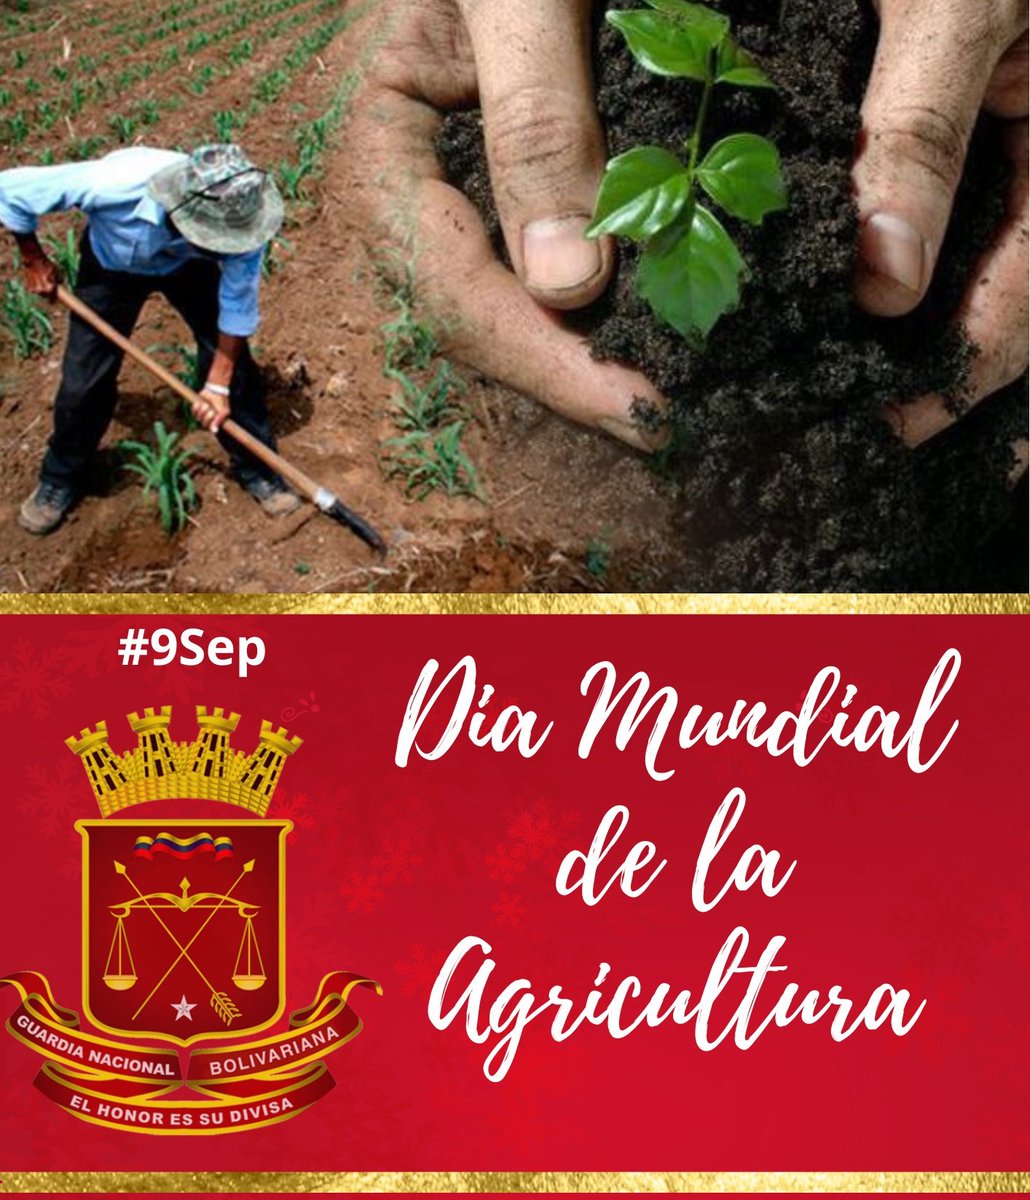 Efemérides: Hoy #9Sep se celebra El Día Mundial de la Agricultura, homenajeamos a los agricultores de la Patria, que dedican su vida a cultivar las tierras para alcanzar el desarrollo agrícola que nos llevará hacia la soberanía alimentaria. 
#GestiónSocialEficiente